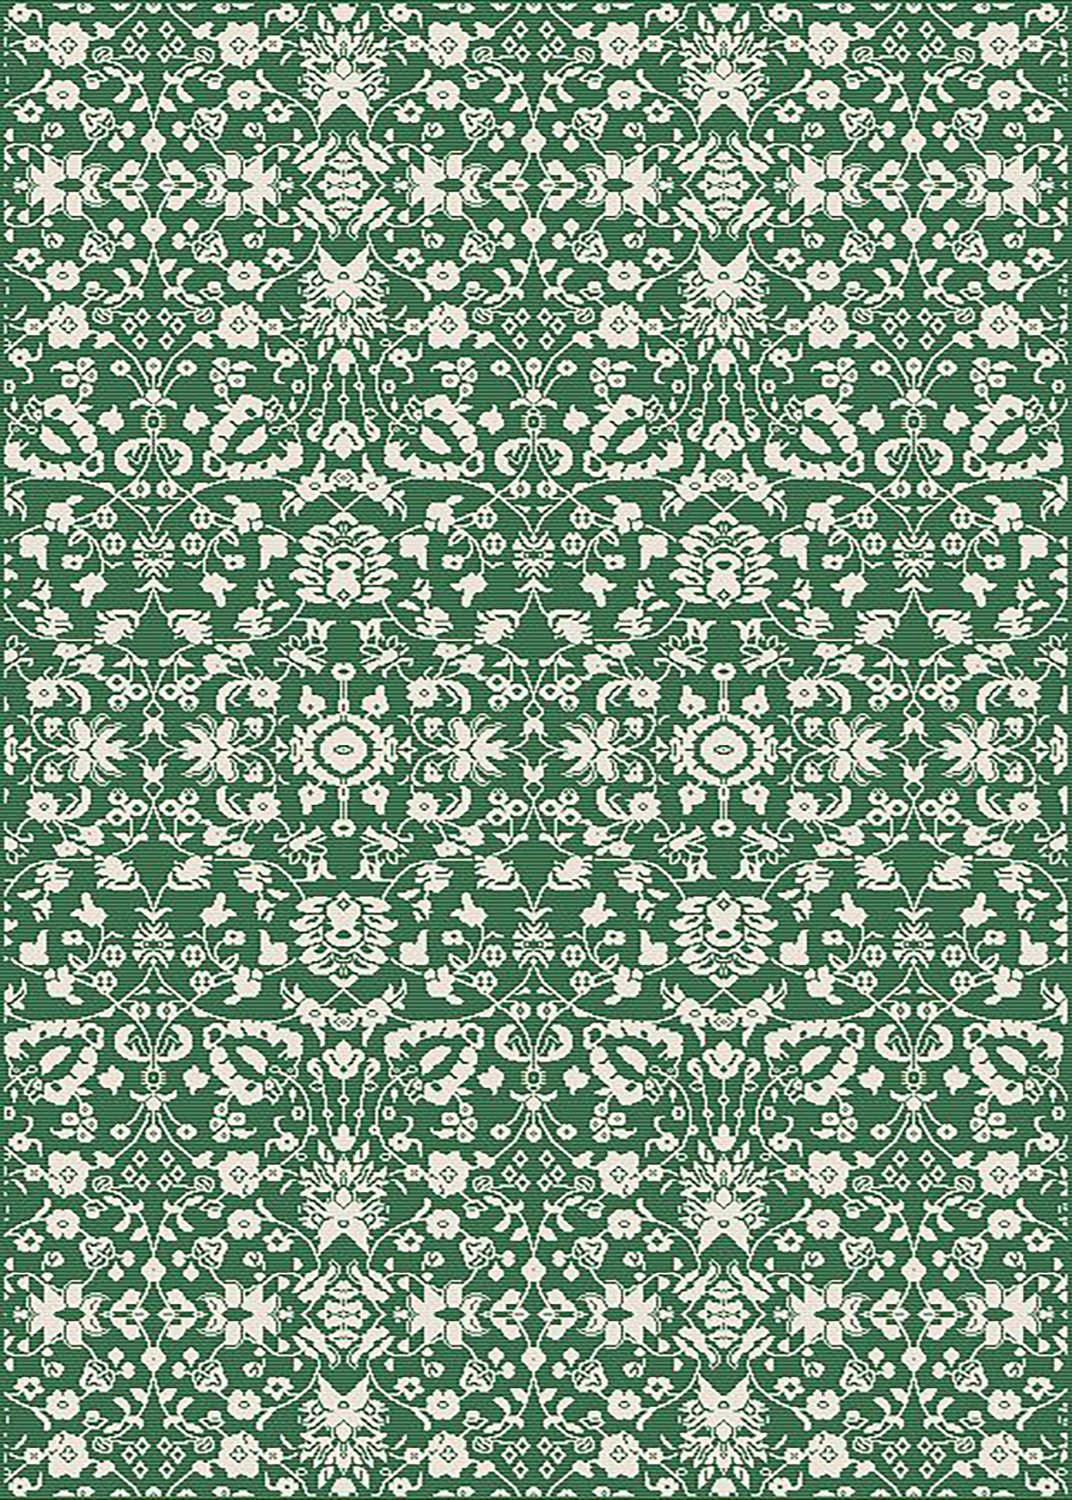 Wilton rug - Brussels Ocean (green)